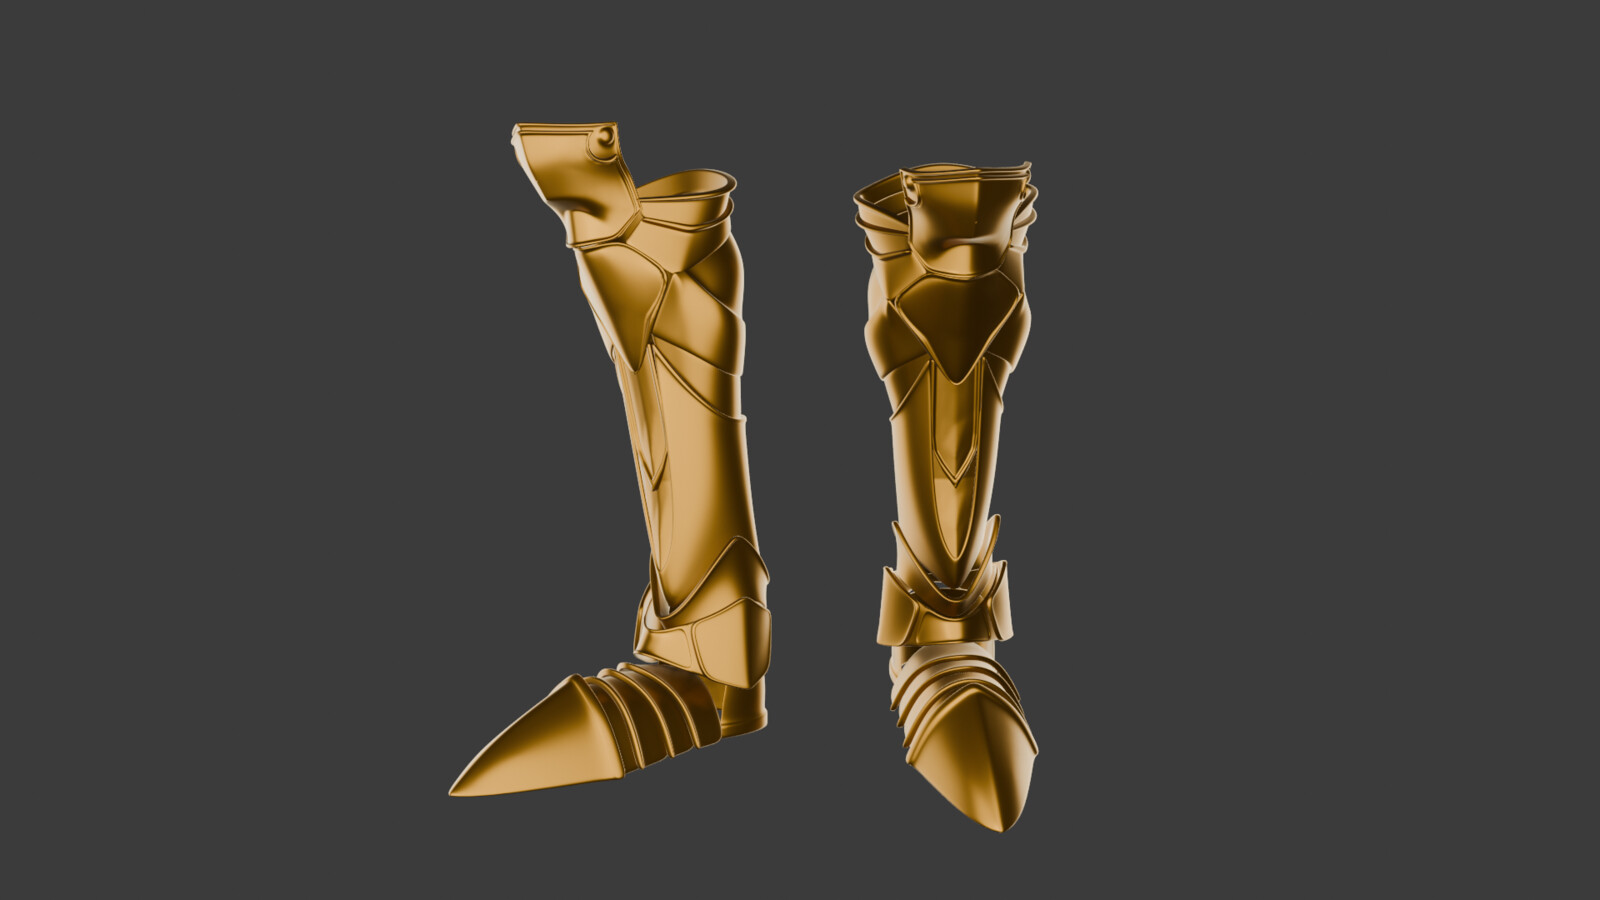 Vincent Valentine's Boots 3D model - Final Fantasy VII